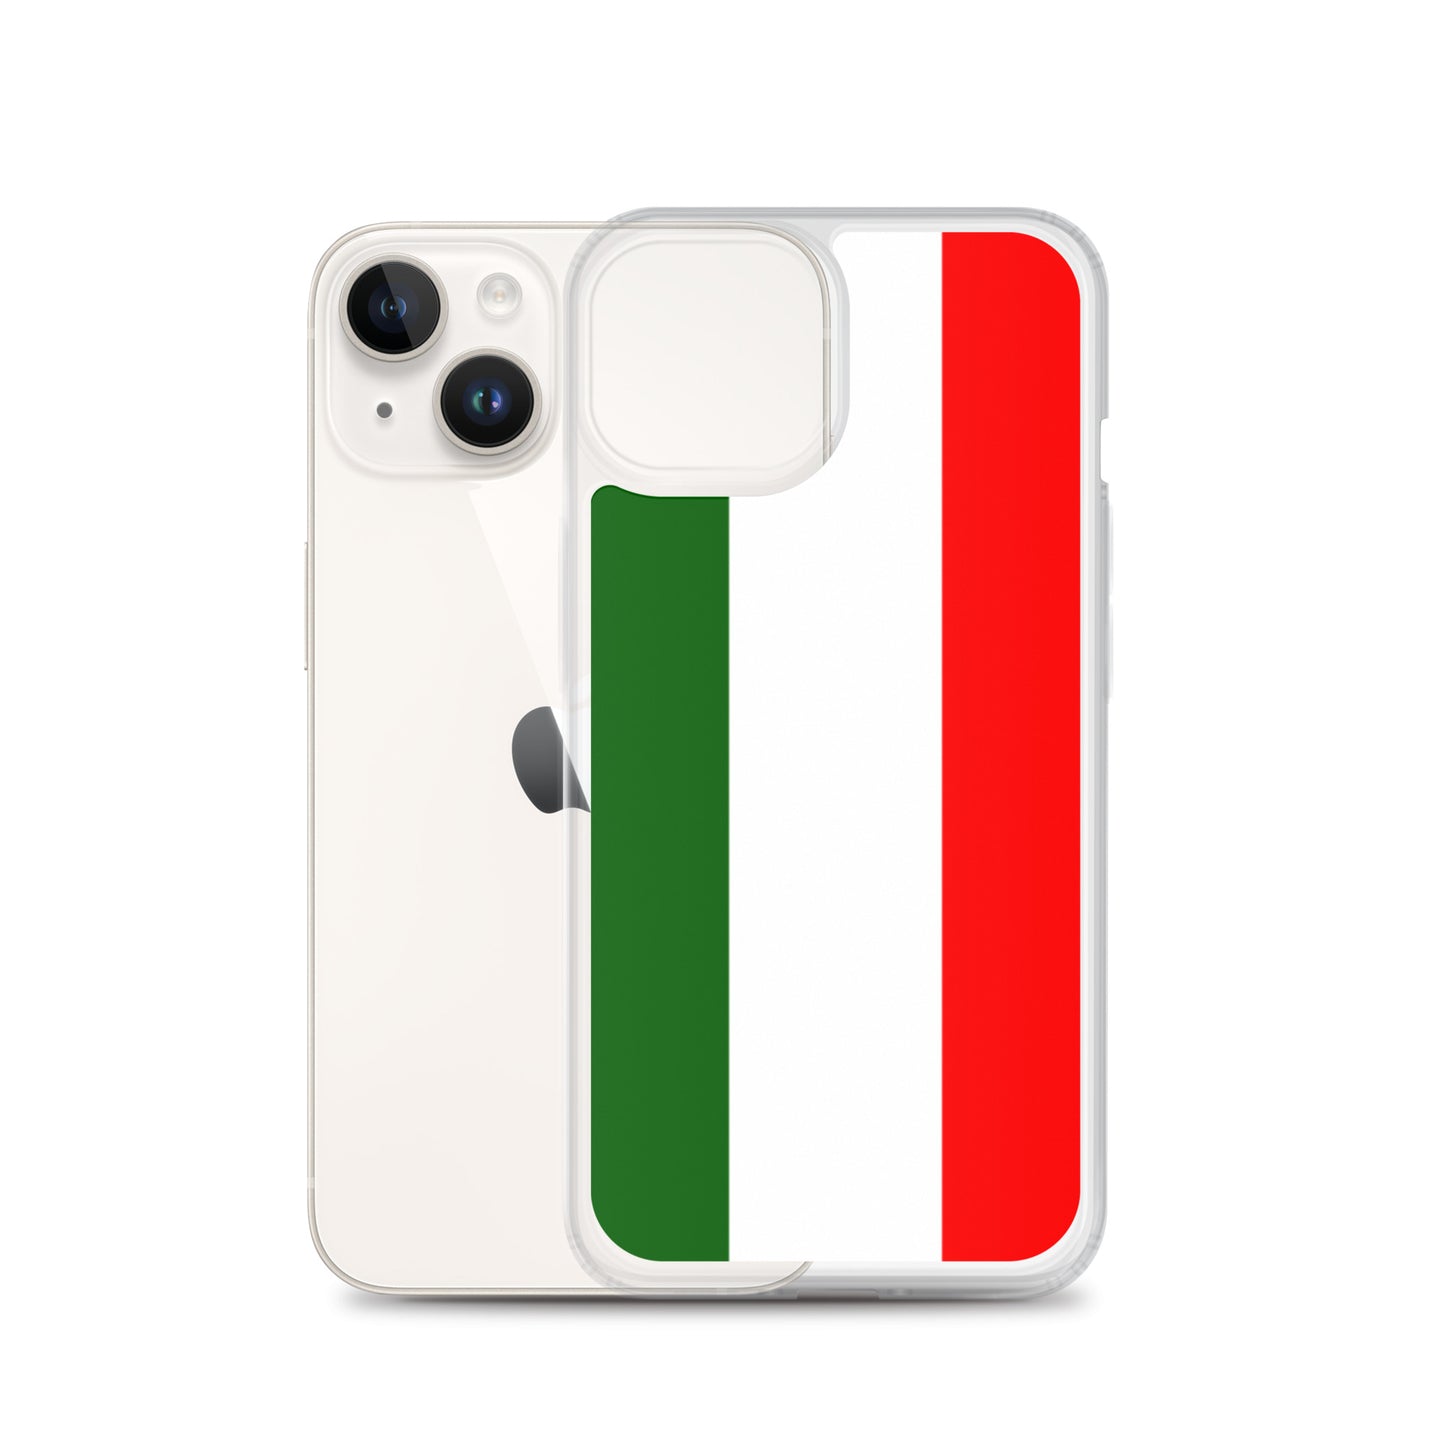 Drapeau de l'Italie - Bandiera d'Italia Coque et Skin iPhone